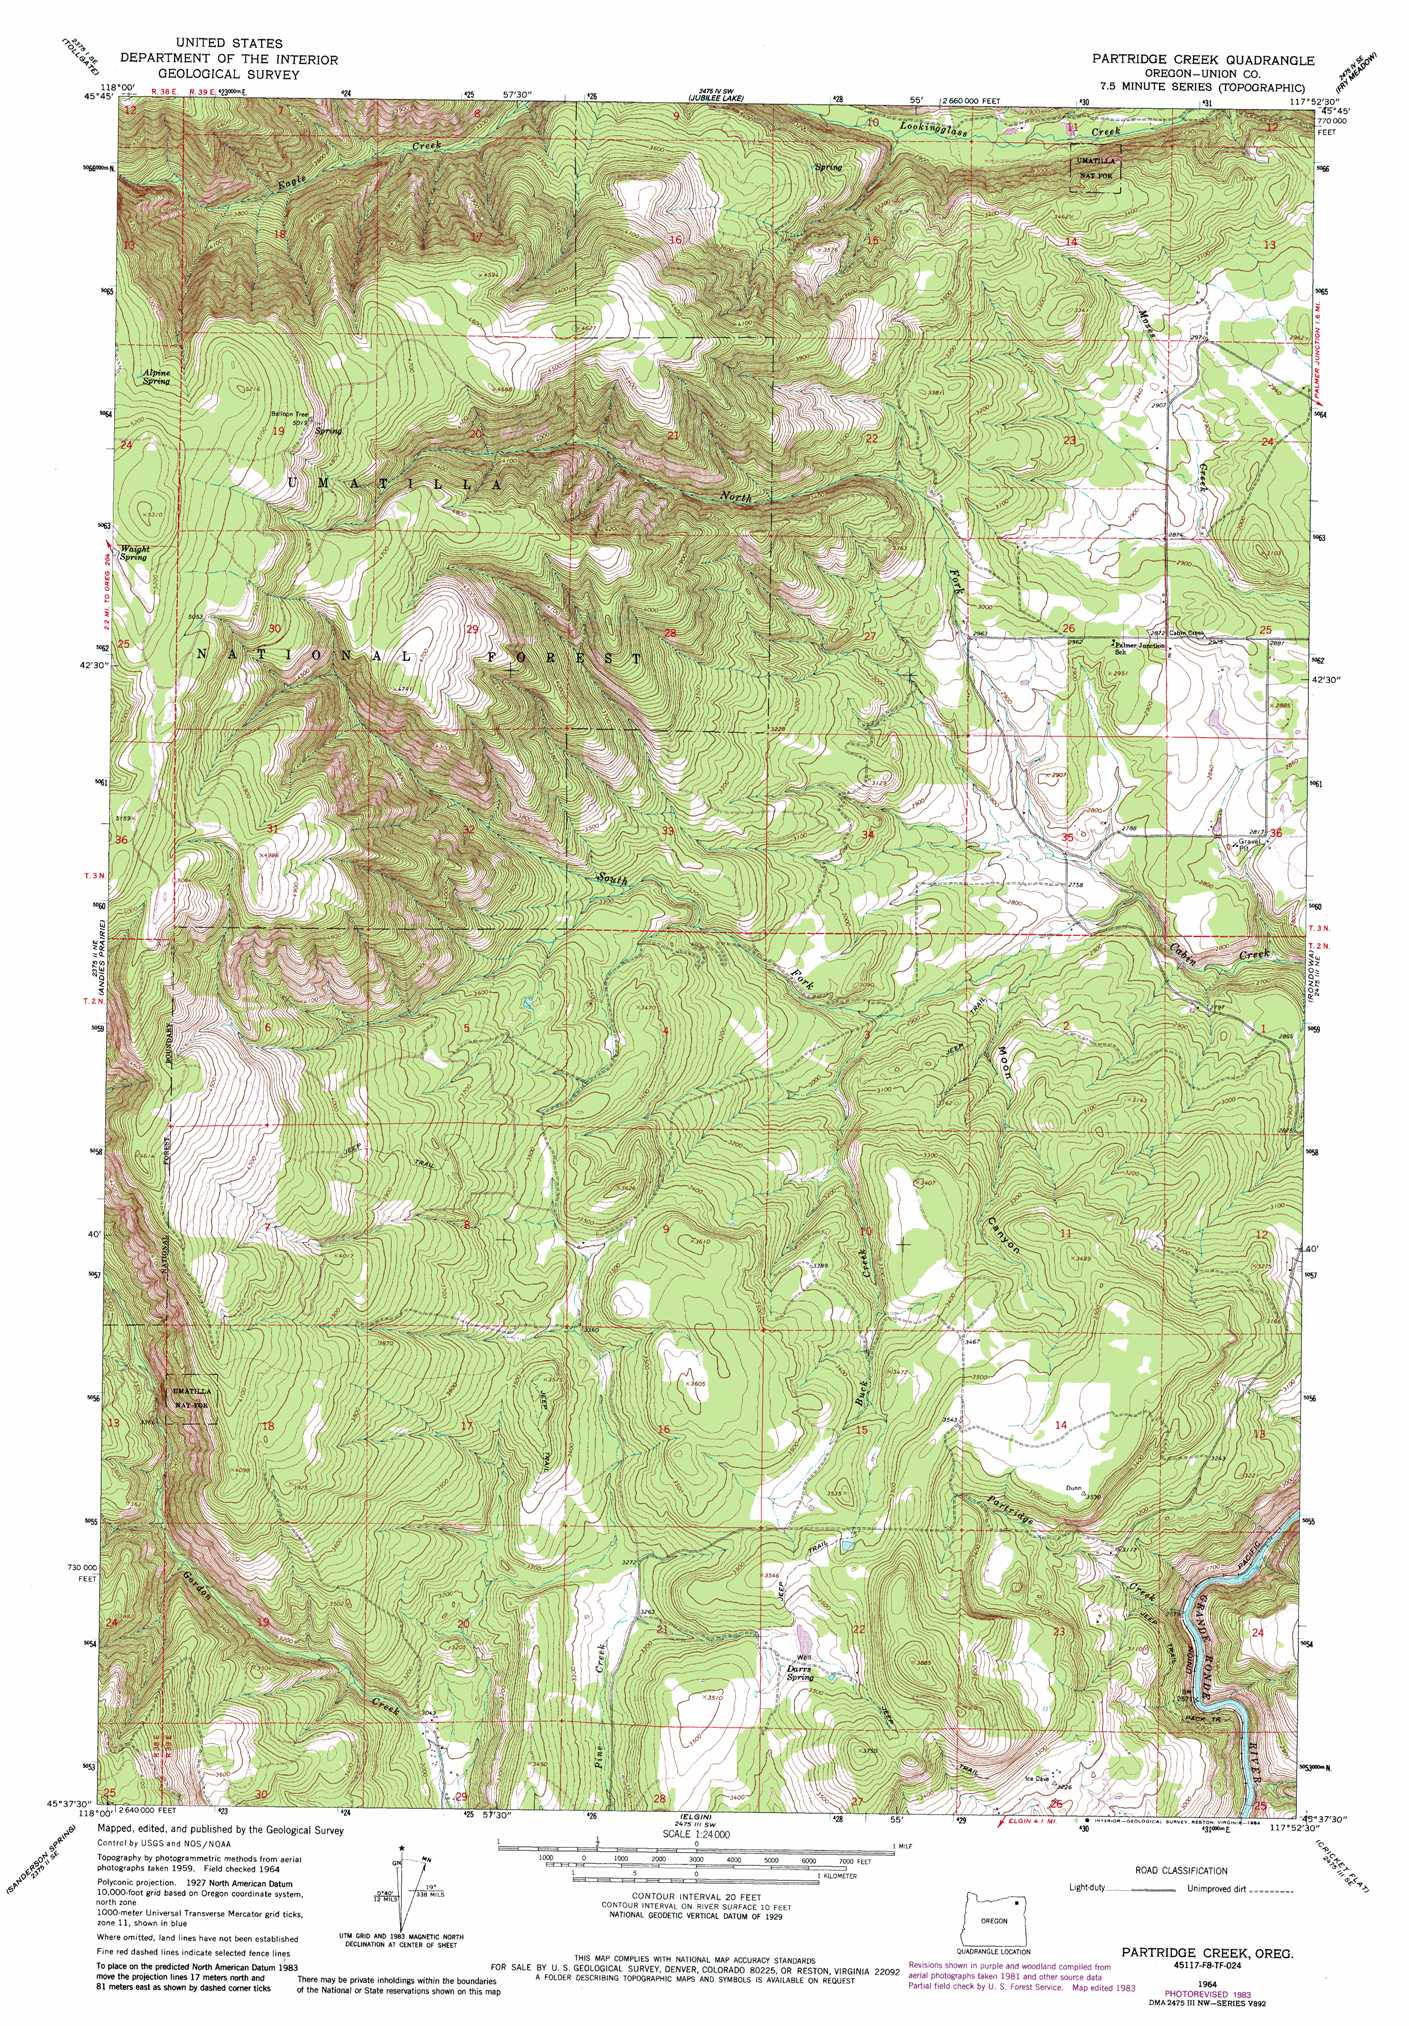 Partridge Creek topographic map, OR - USGS Topo Quad 45117f8